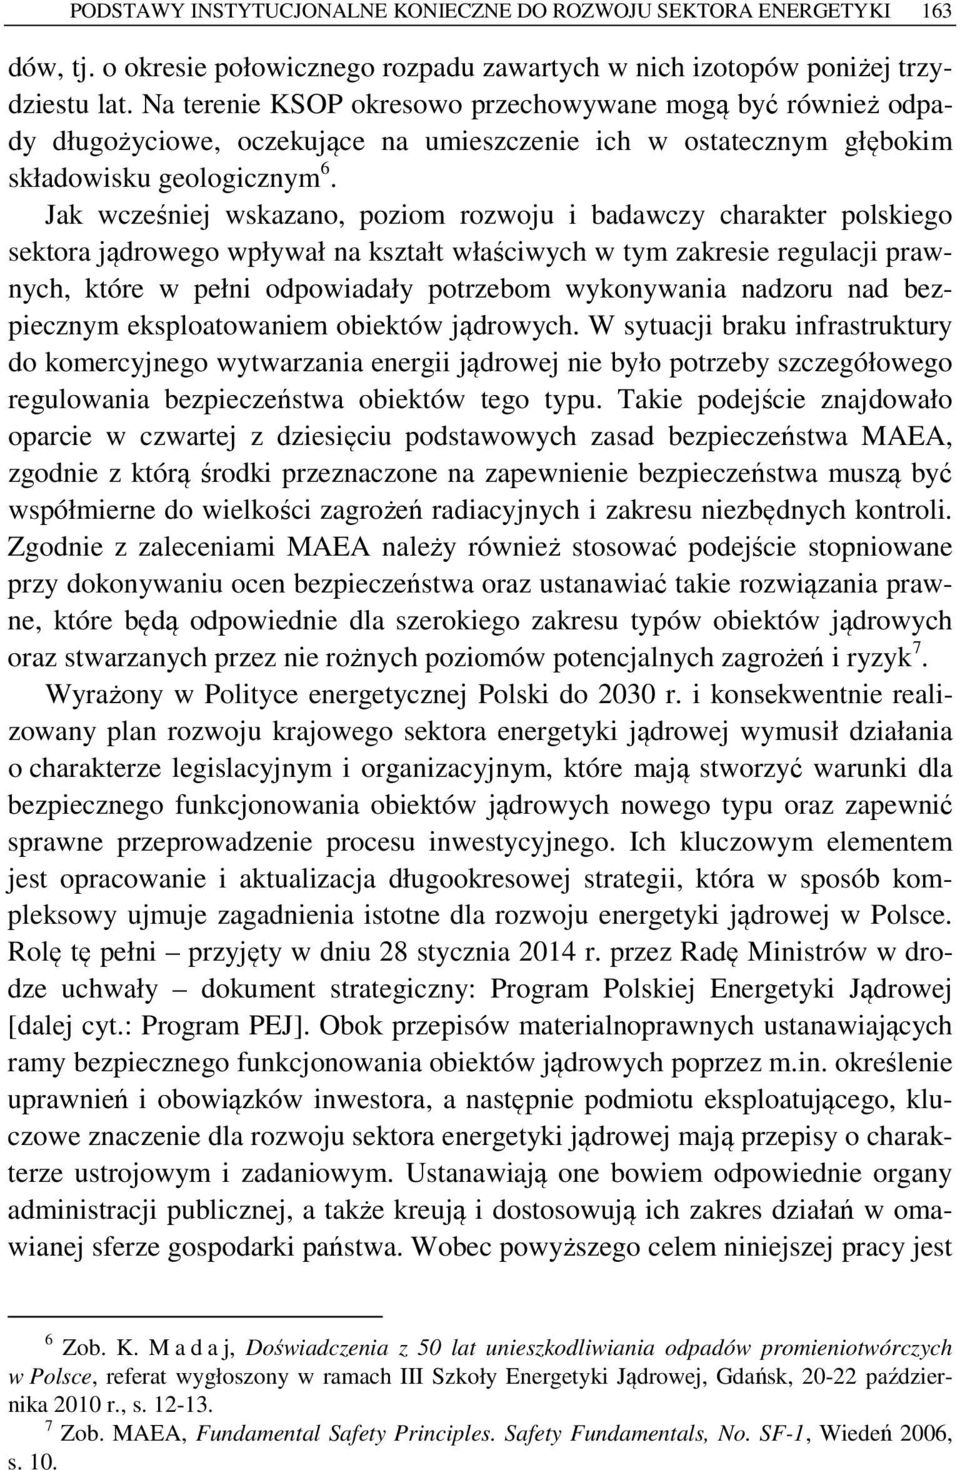 Jak wcześniej wskazano, poziom rozwoju i badawczy charakter polskiego sektora jądrowego wpływał na kształt właściwych w tym zakresie regulacji prawnych, które w pełni odpowiadały potrzebom